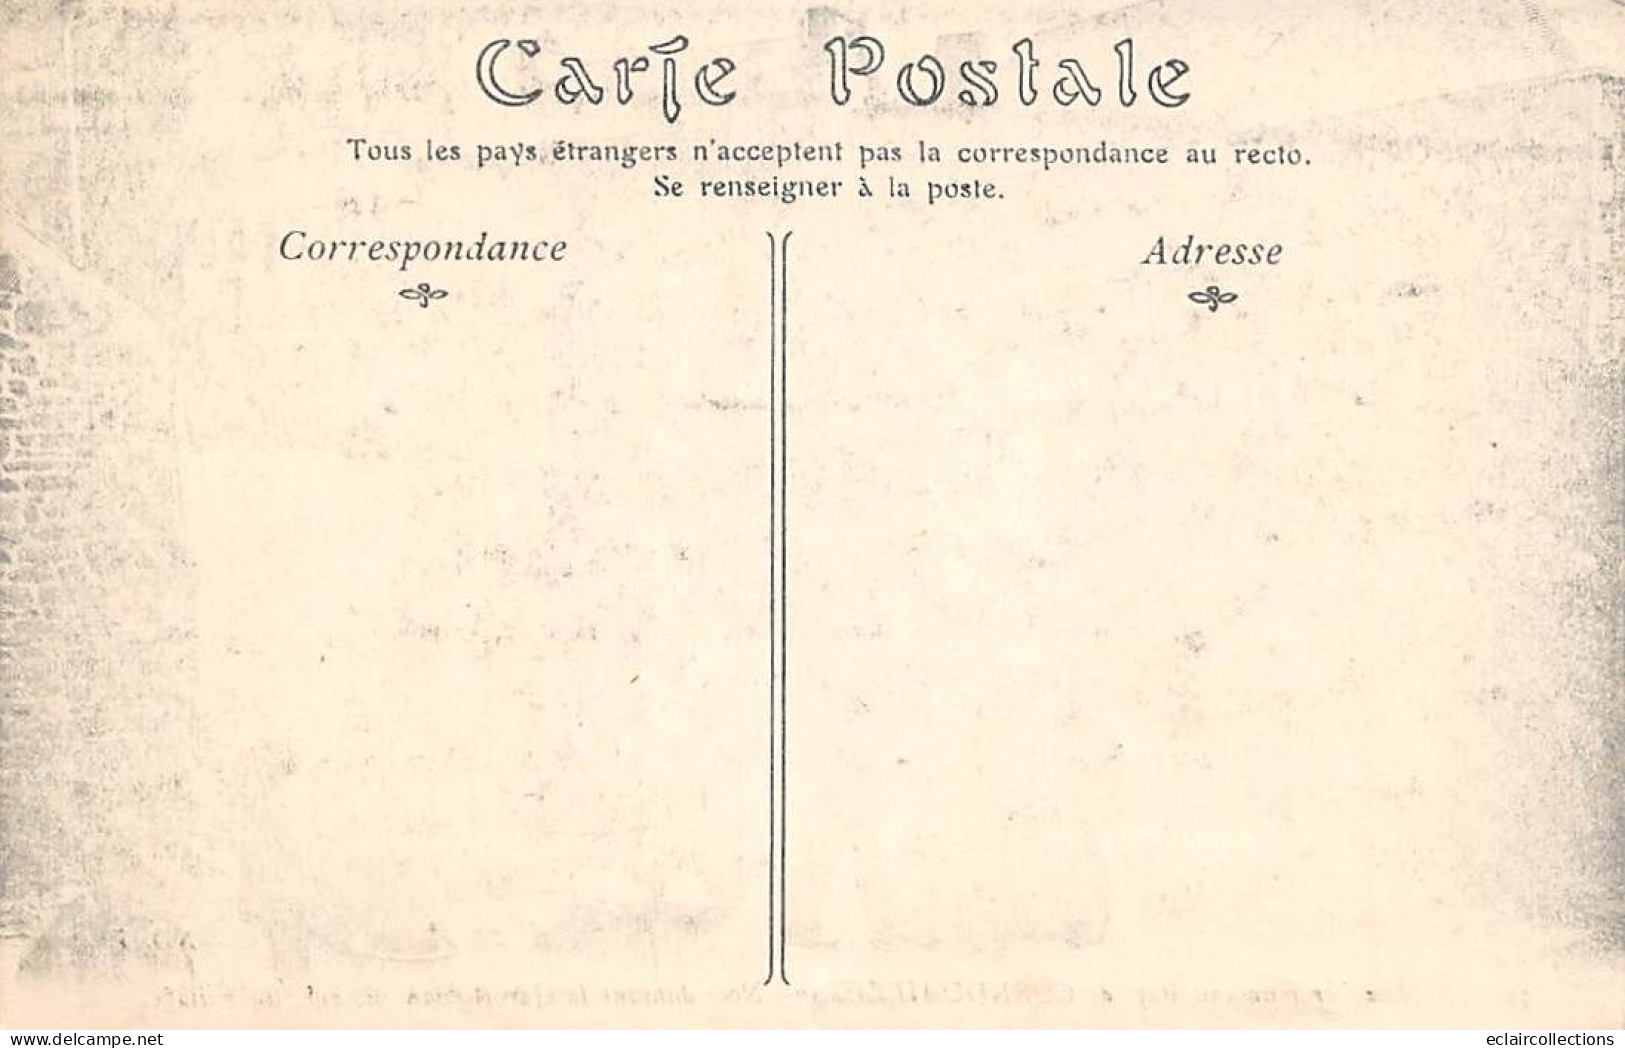 Scrignac-Berrien   29    Noce en Cornuailles   19 Cartes Numérotées de 1 a 19 . dont bons documents         (voir scan)